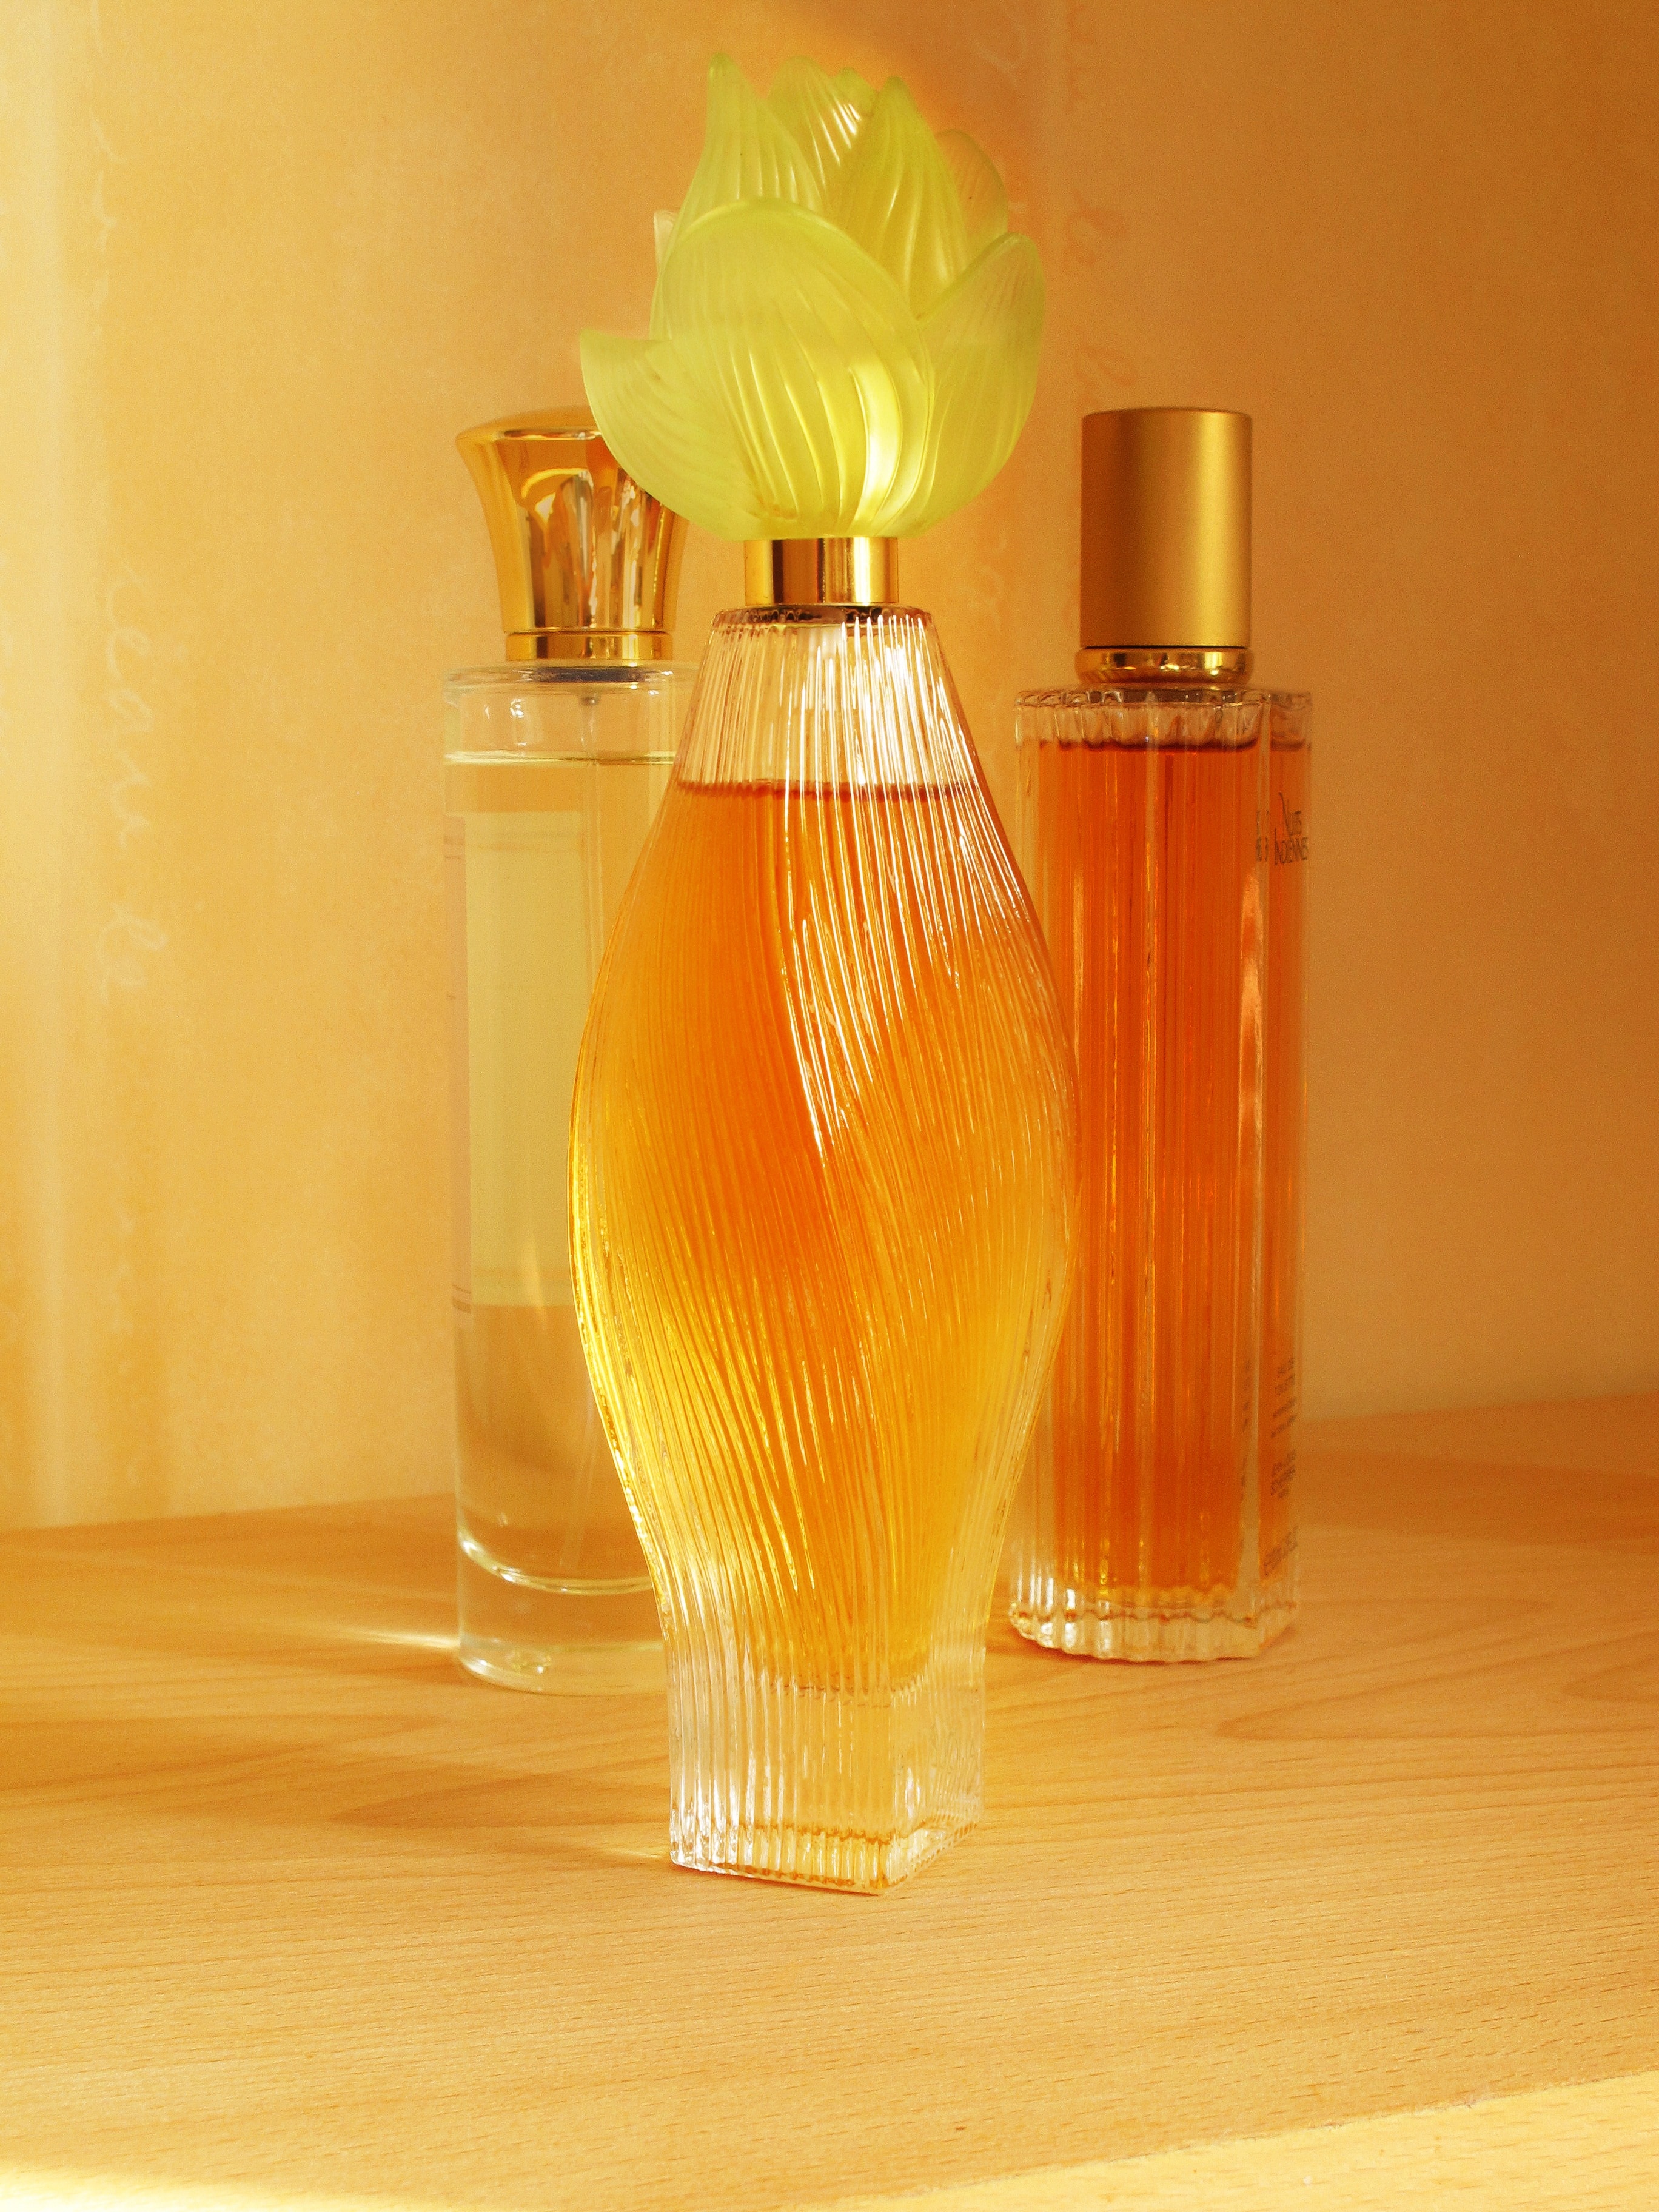 640x960 wallpaper | clear glass perfume bottle | Peakpx